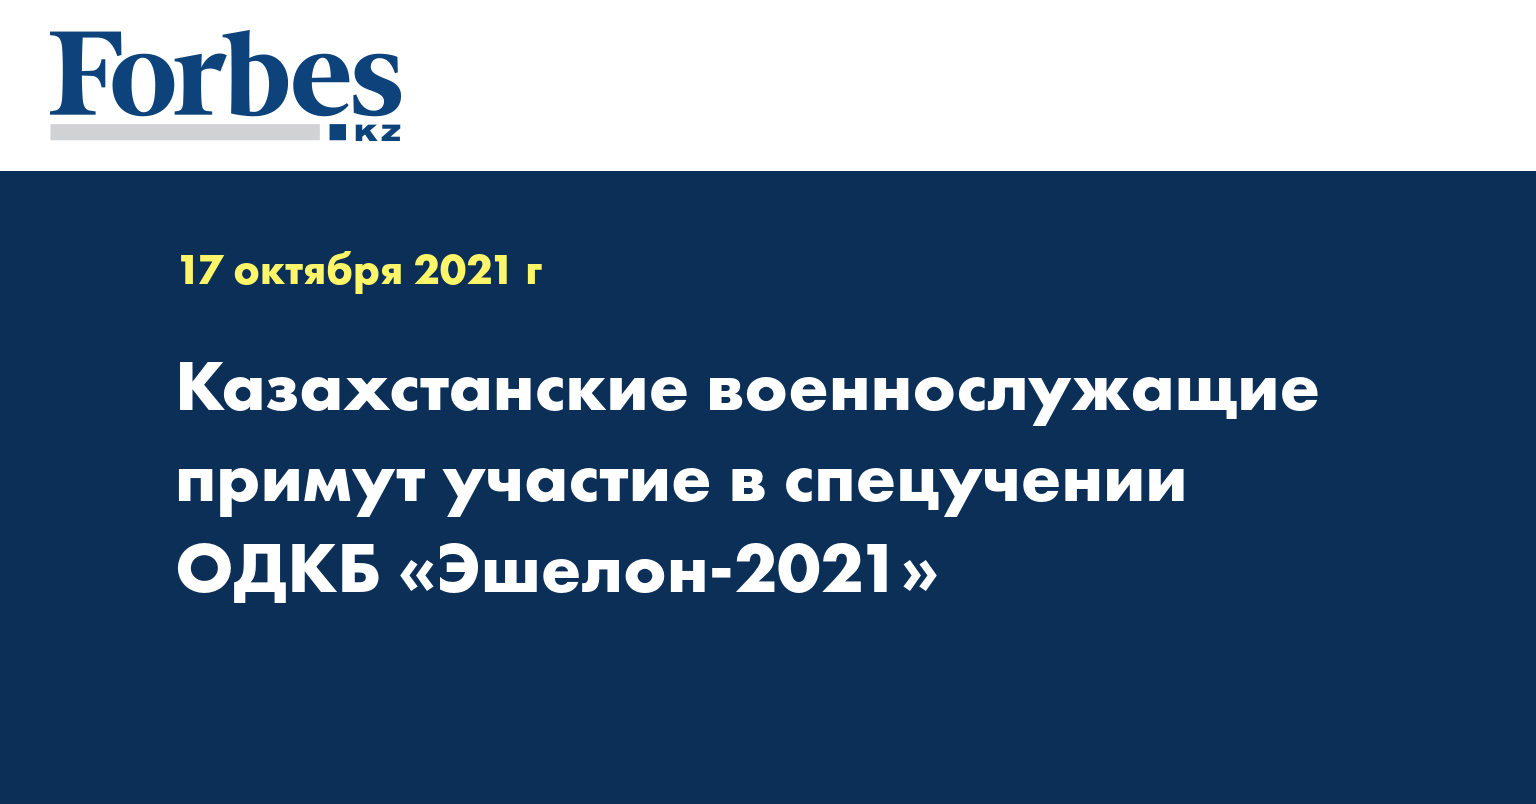 Казахстанские военнослужащие примут участие в спецучении ОДКБ «Эшелон-2021»